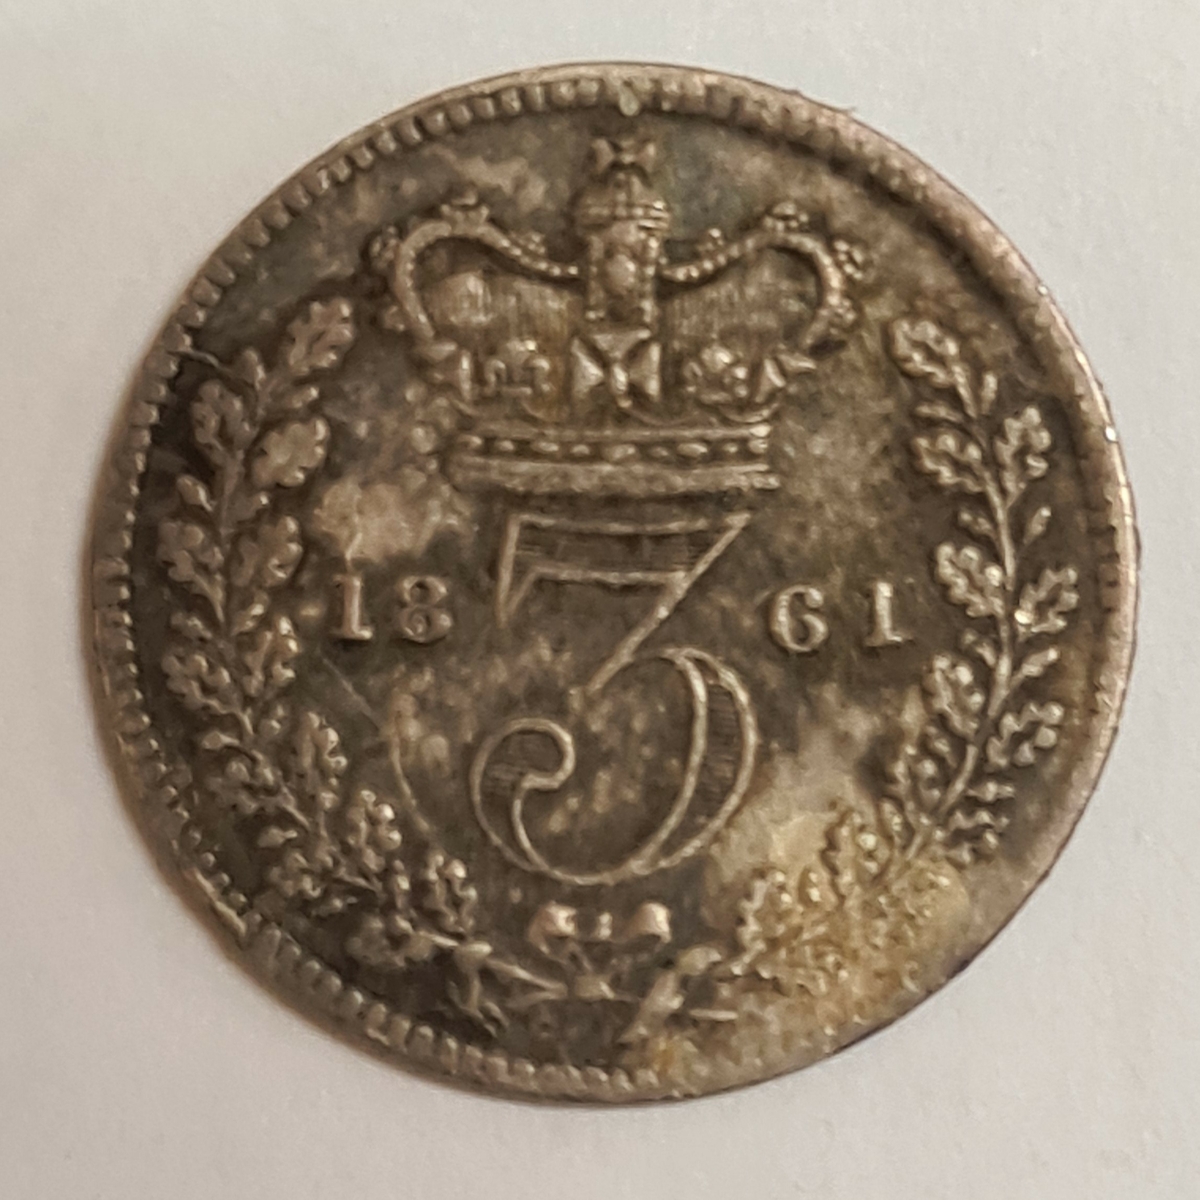 2 mynt från Storbritanien.
3 Pence, 1861